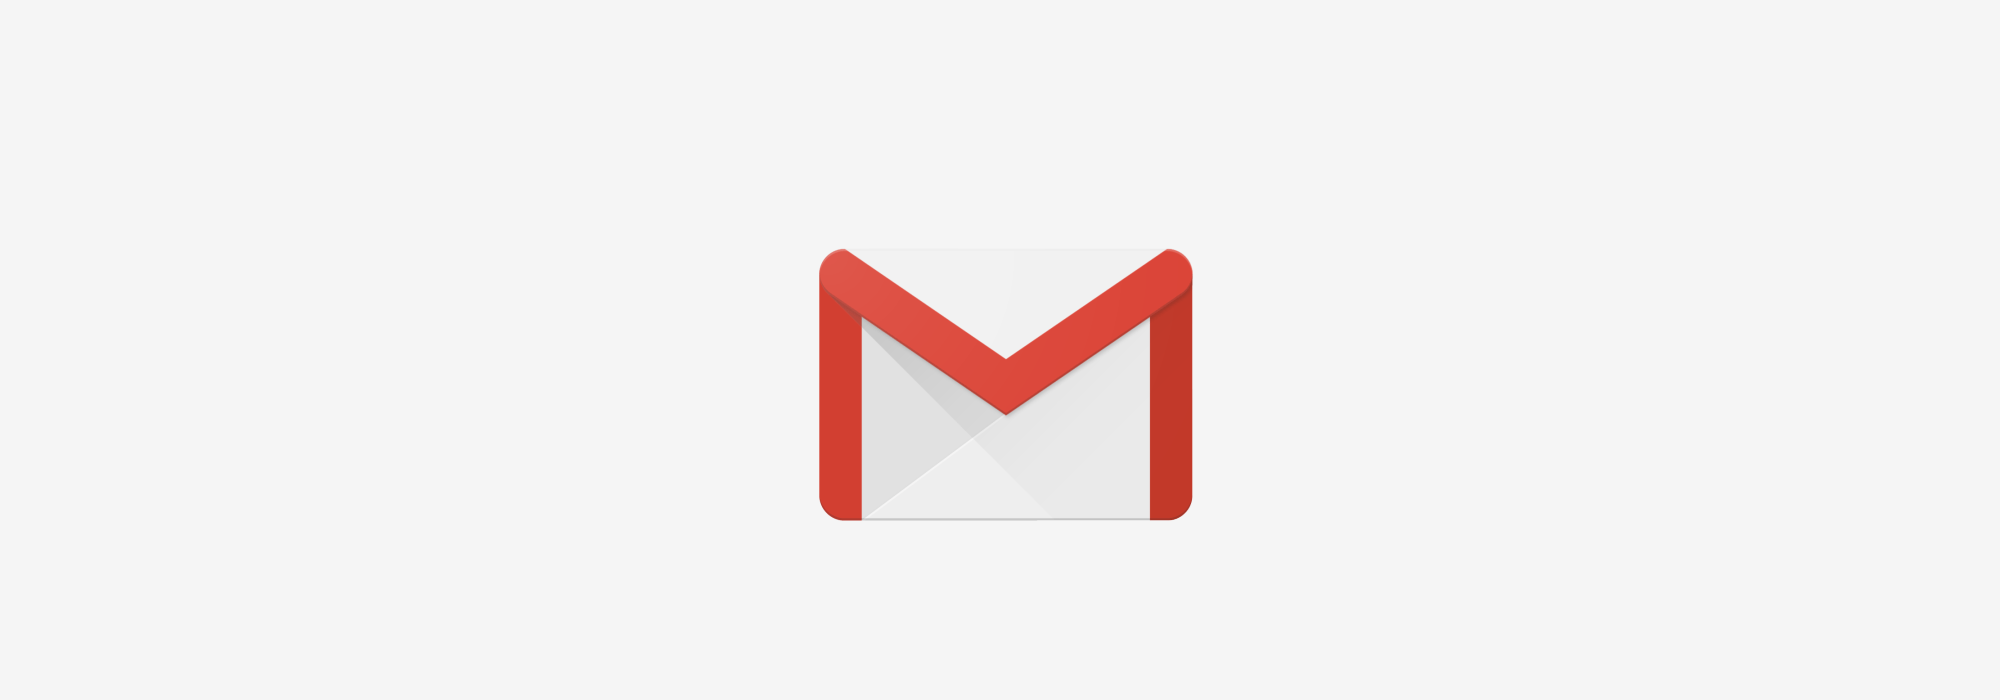 Gmail.com Logo - Inbox by Gmail